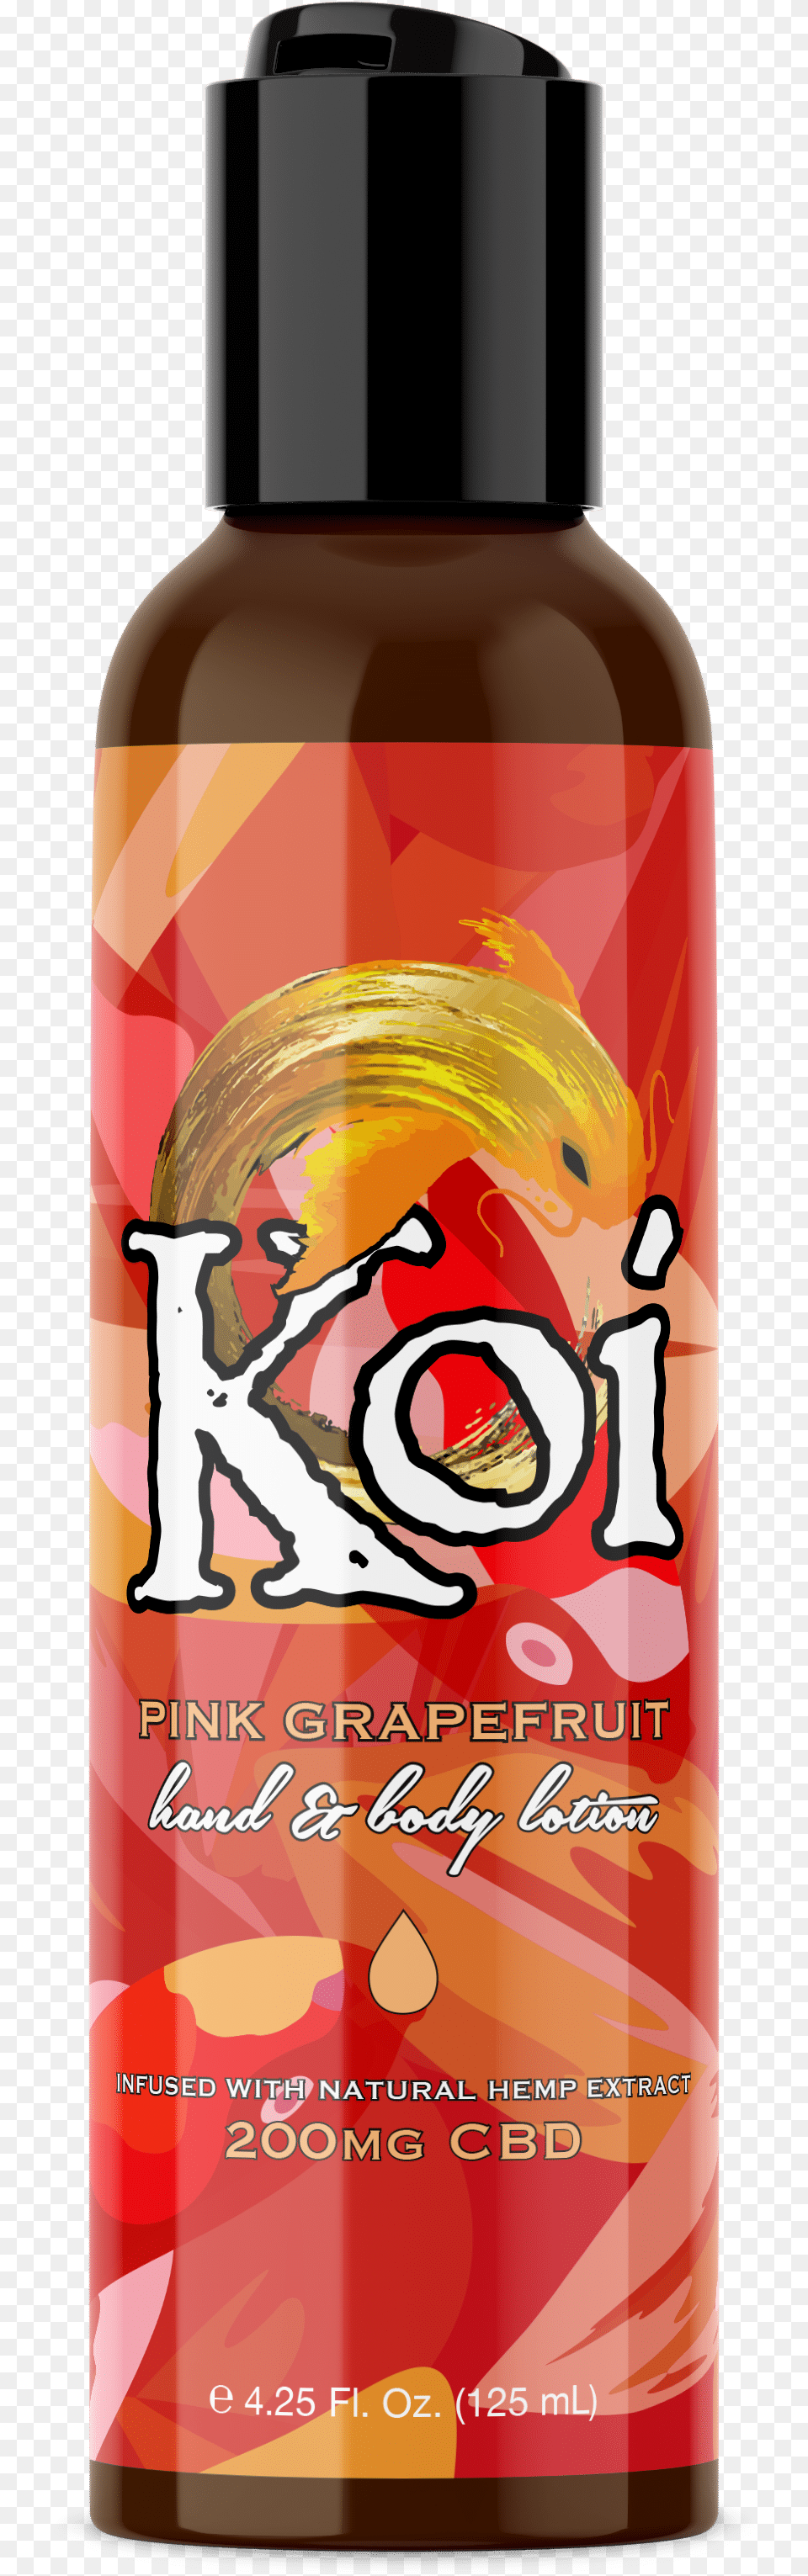 Koi Naturals Healing Balm, Bottle, Lotion, Food, Ketchup Png Image